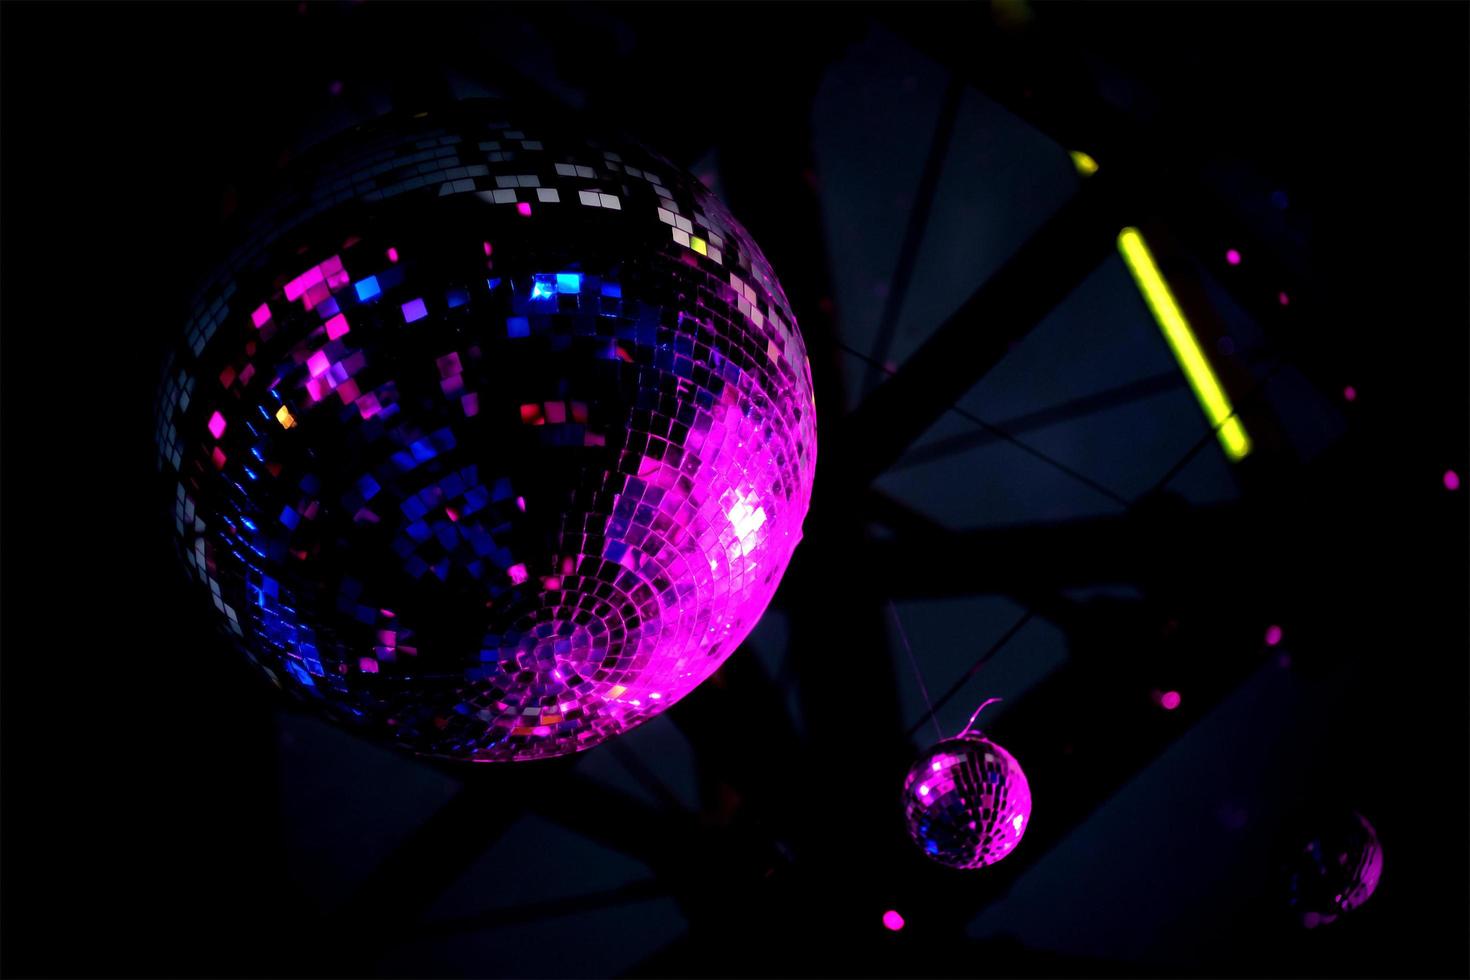 bola de discoteca espelhada em luz roxa foto